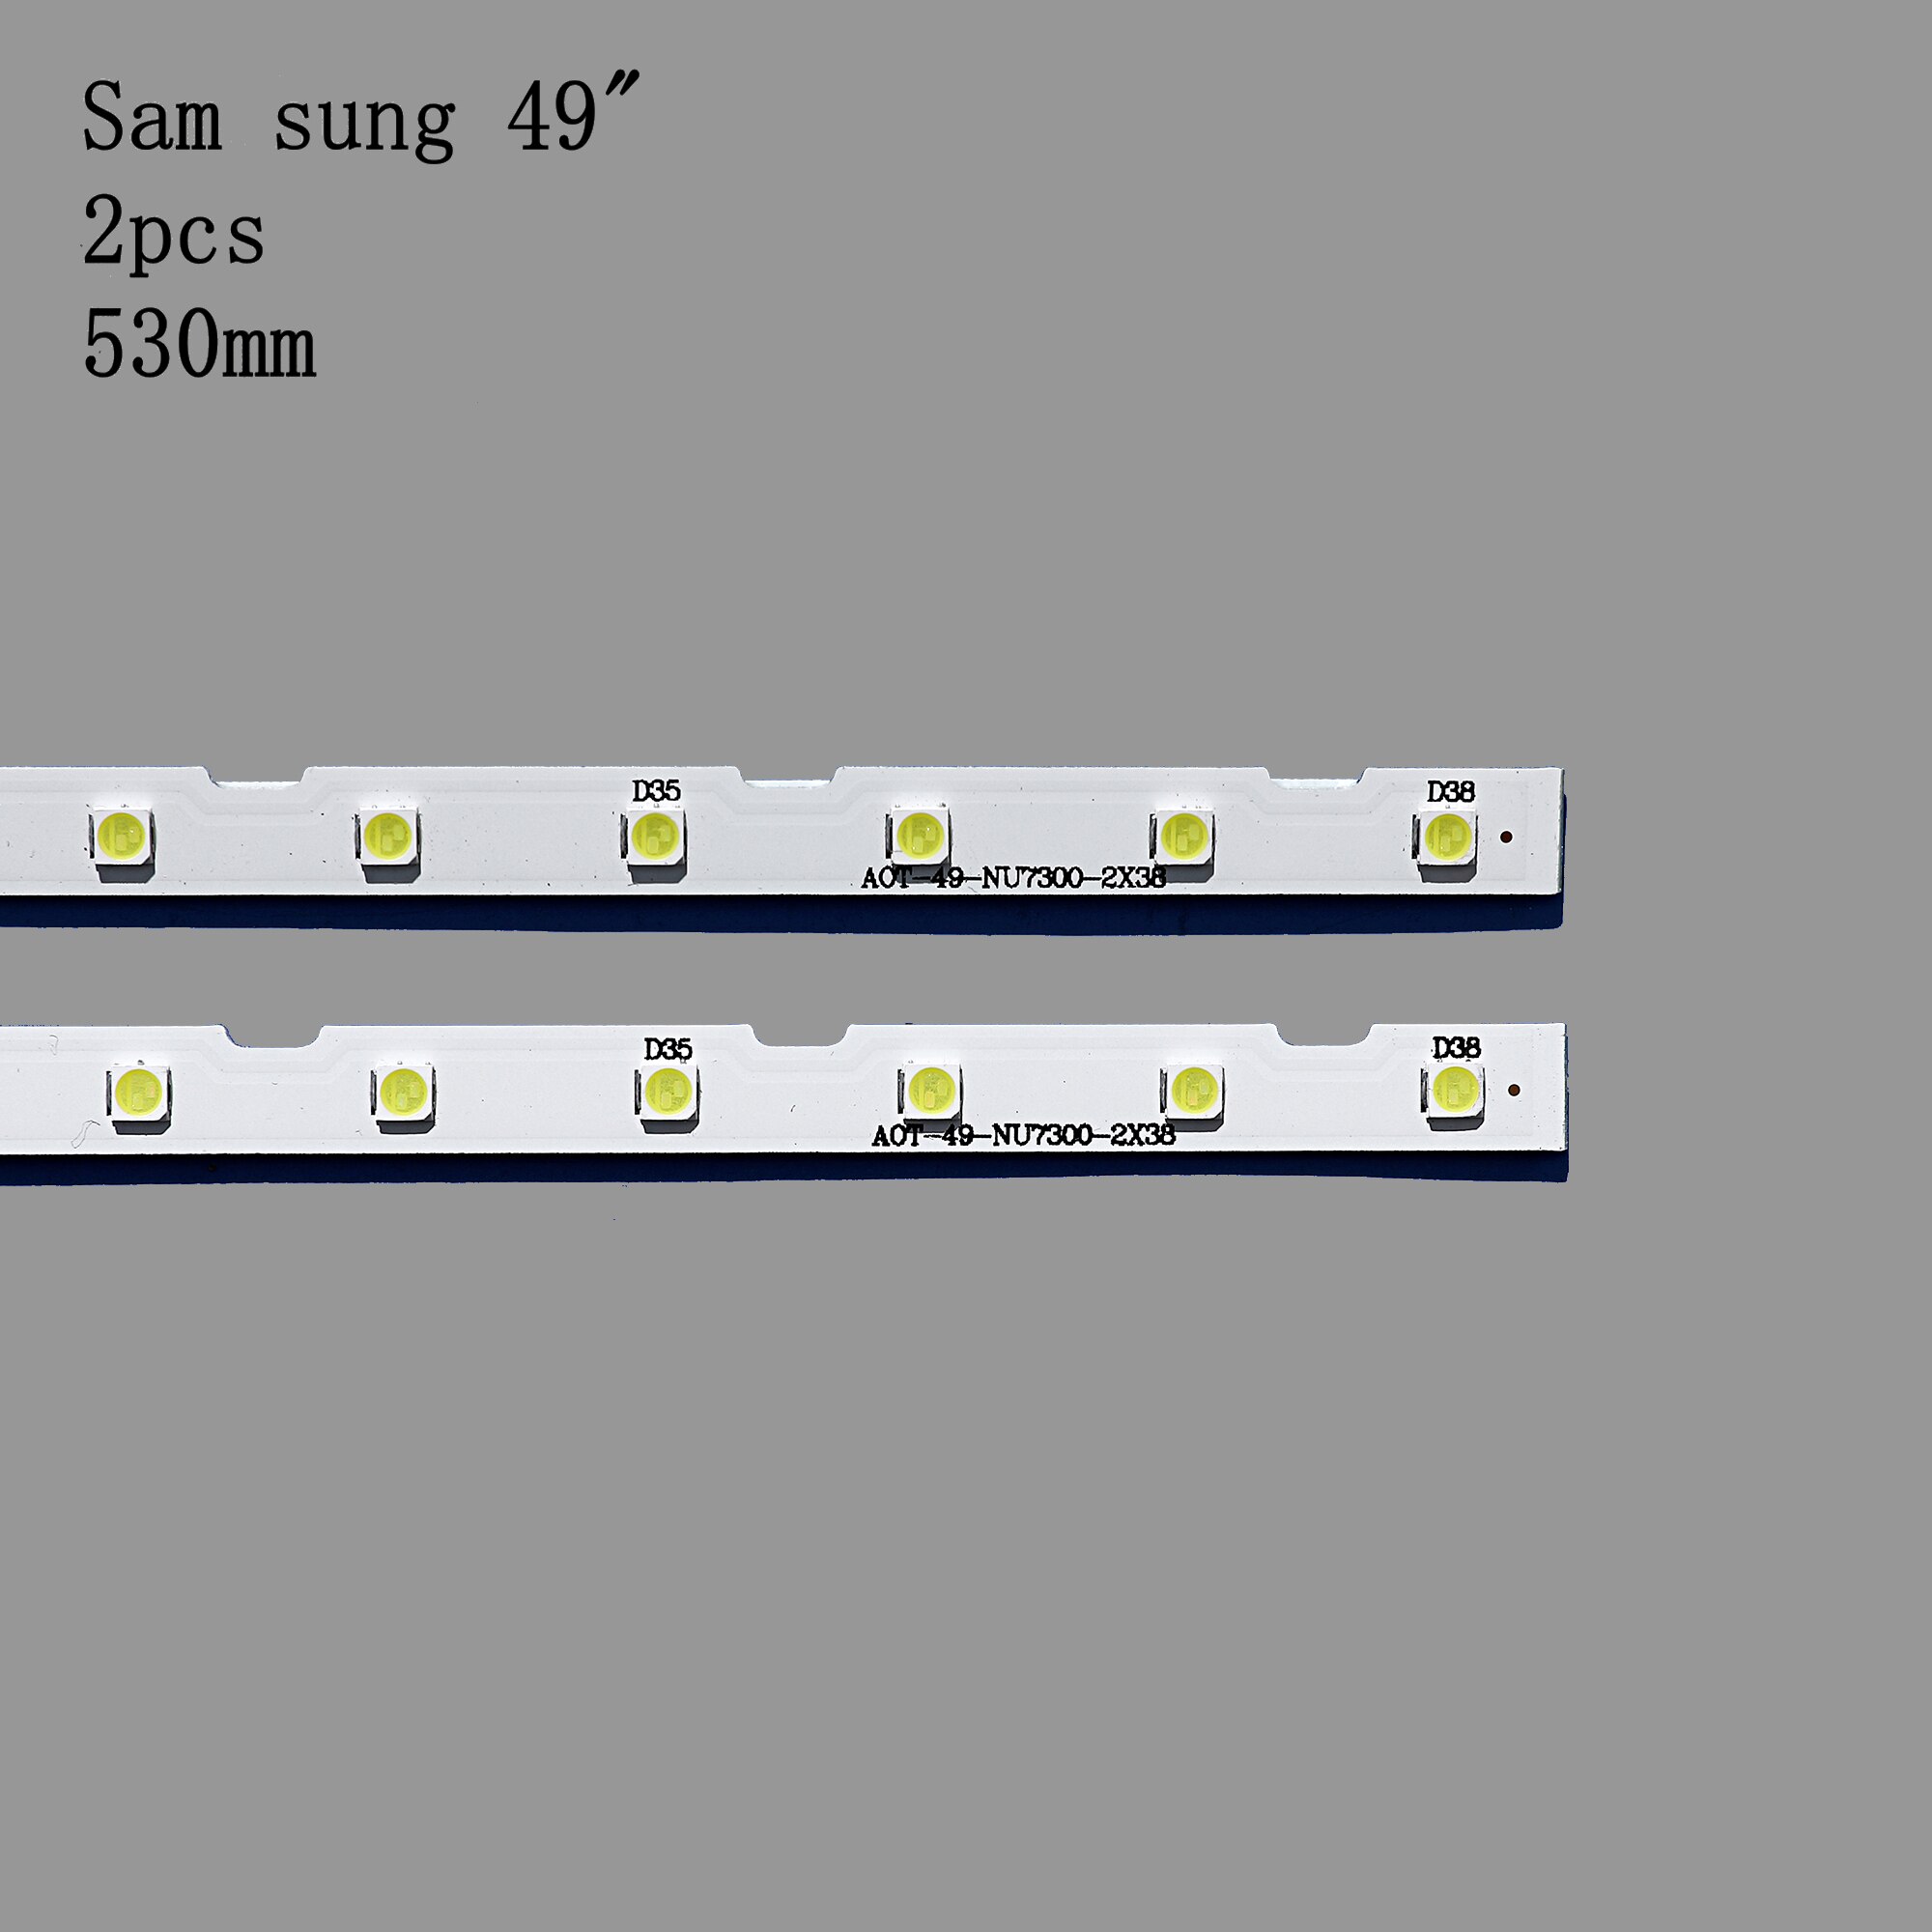 2pcs LED Backlight Strip for Sam-sung UE49NU7100 UE49NU7102 UE49NU7140U UE49NU7670 UE49NU7120U UE49NU7170U UN49NU7100 UE49NU7300